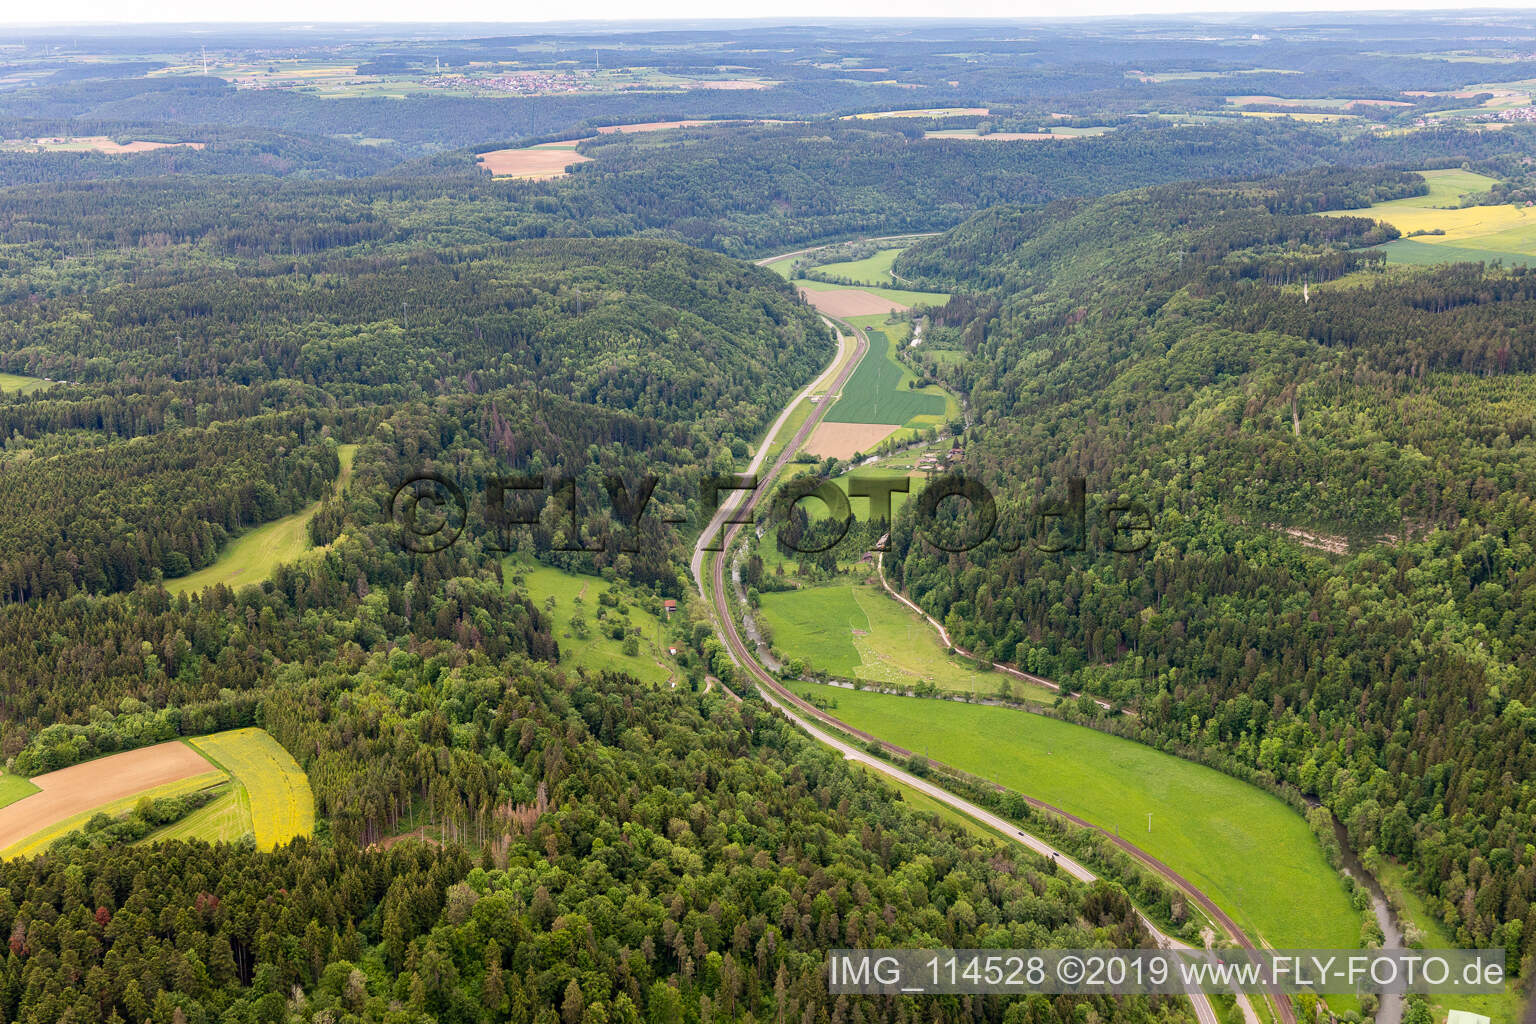 Vue aérienne de Vallée du Neckar à Sulz am Neckar dans le département Bade-Wurtemberg, Allemagne